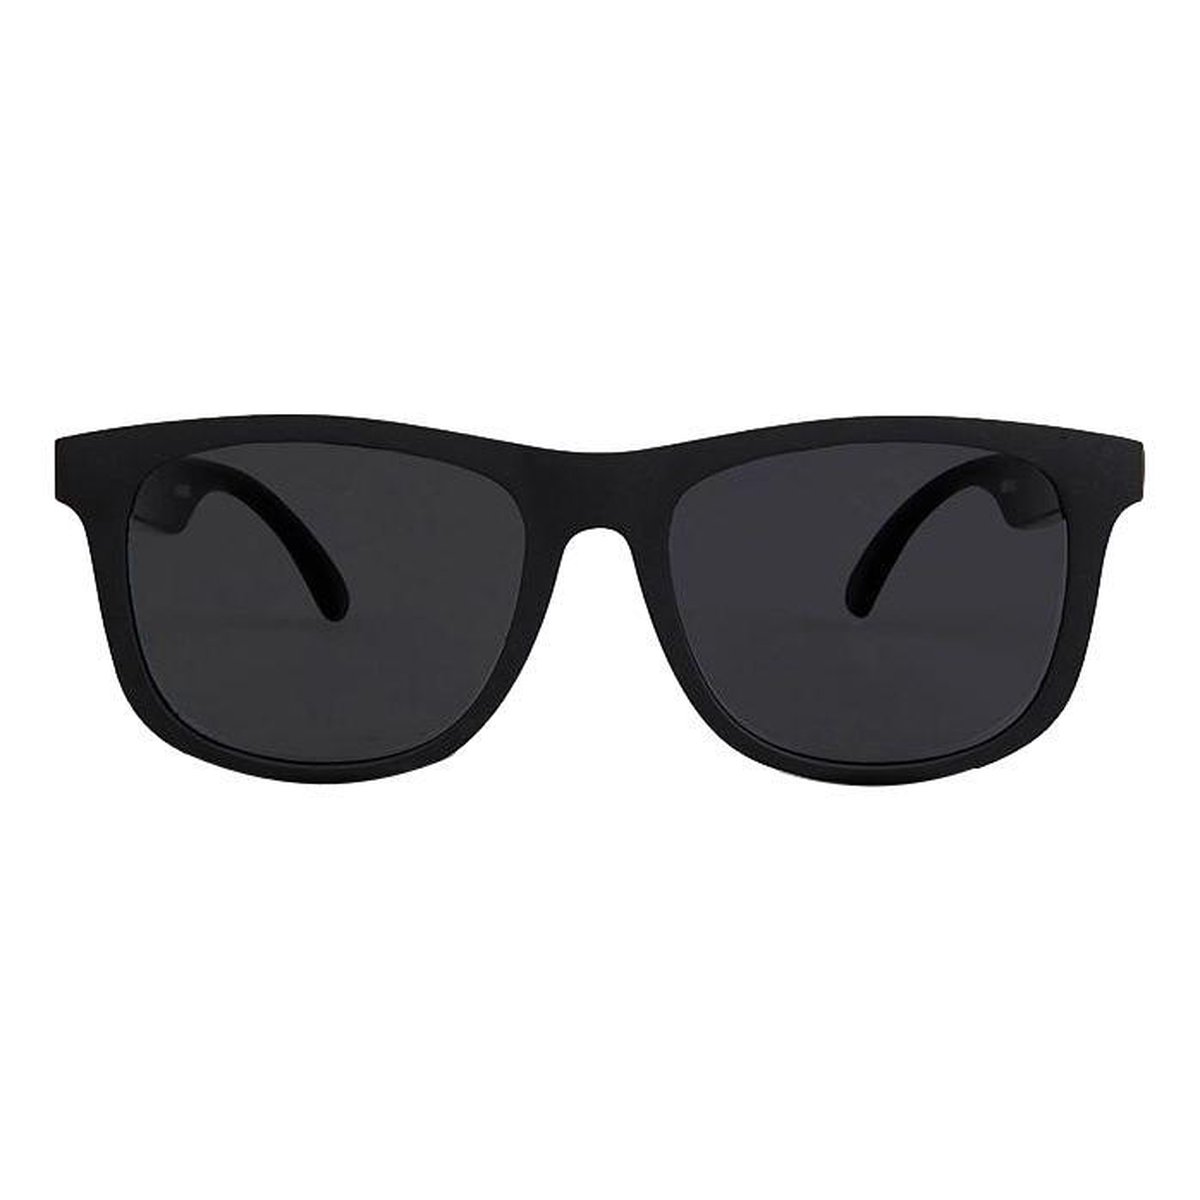 Kinder Zonnebril - Peuter Zonnebril - Jongen - Meisje - Zwart - Zwarte Glazen - UV400 Bescherming - 2 t/m 6 jaar